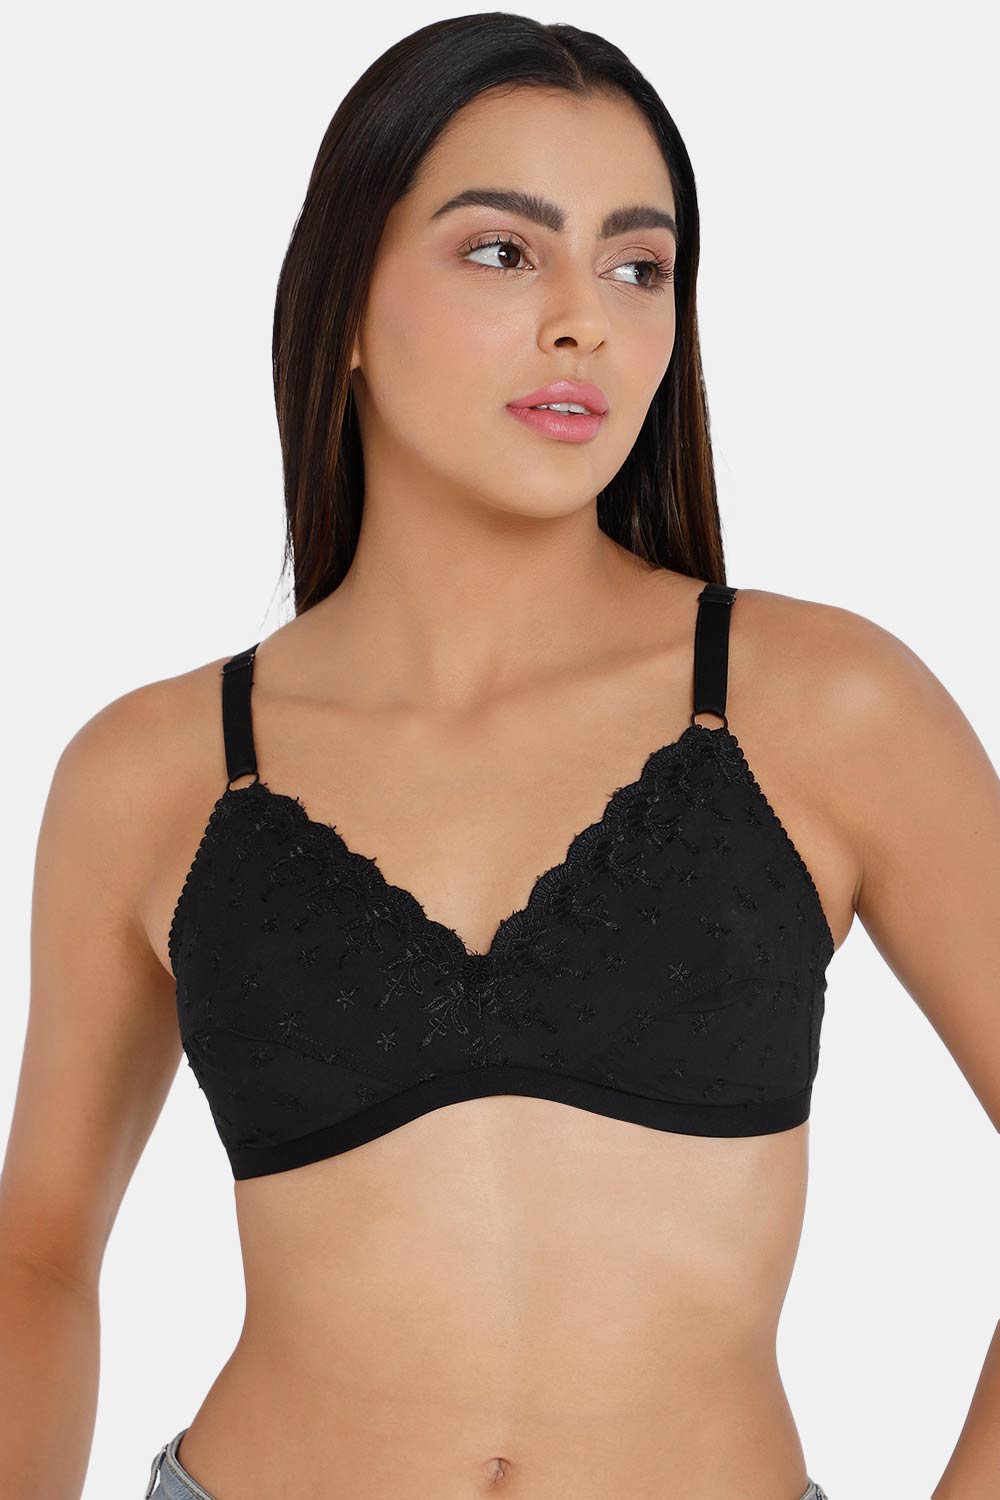 Buy online Black Net Bra from lingerie for Women by Krishna